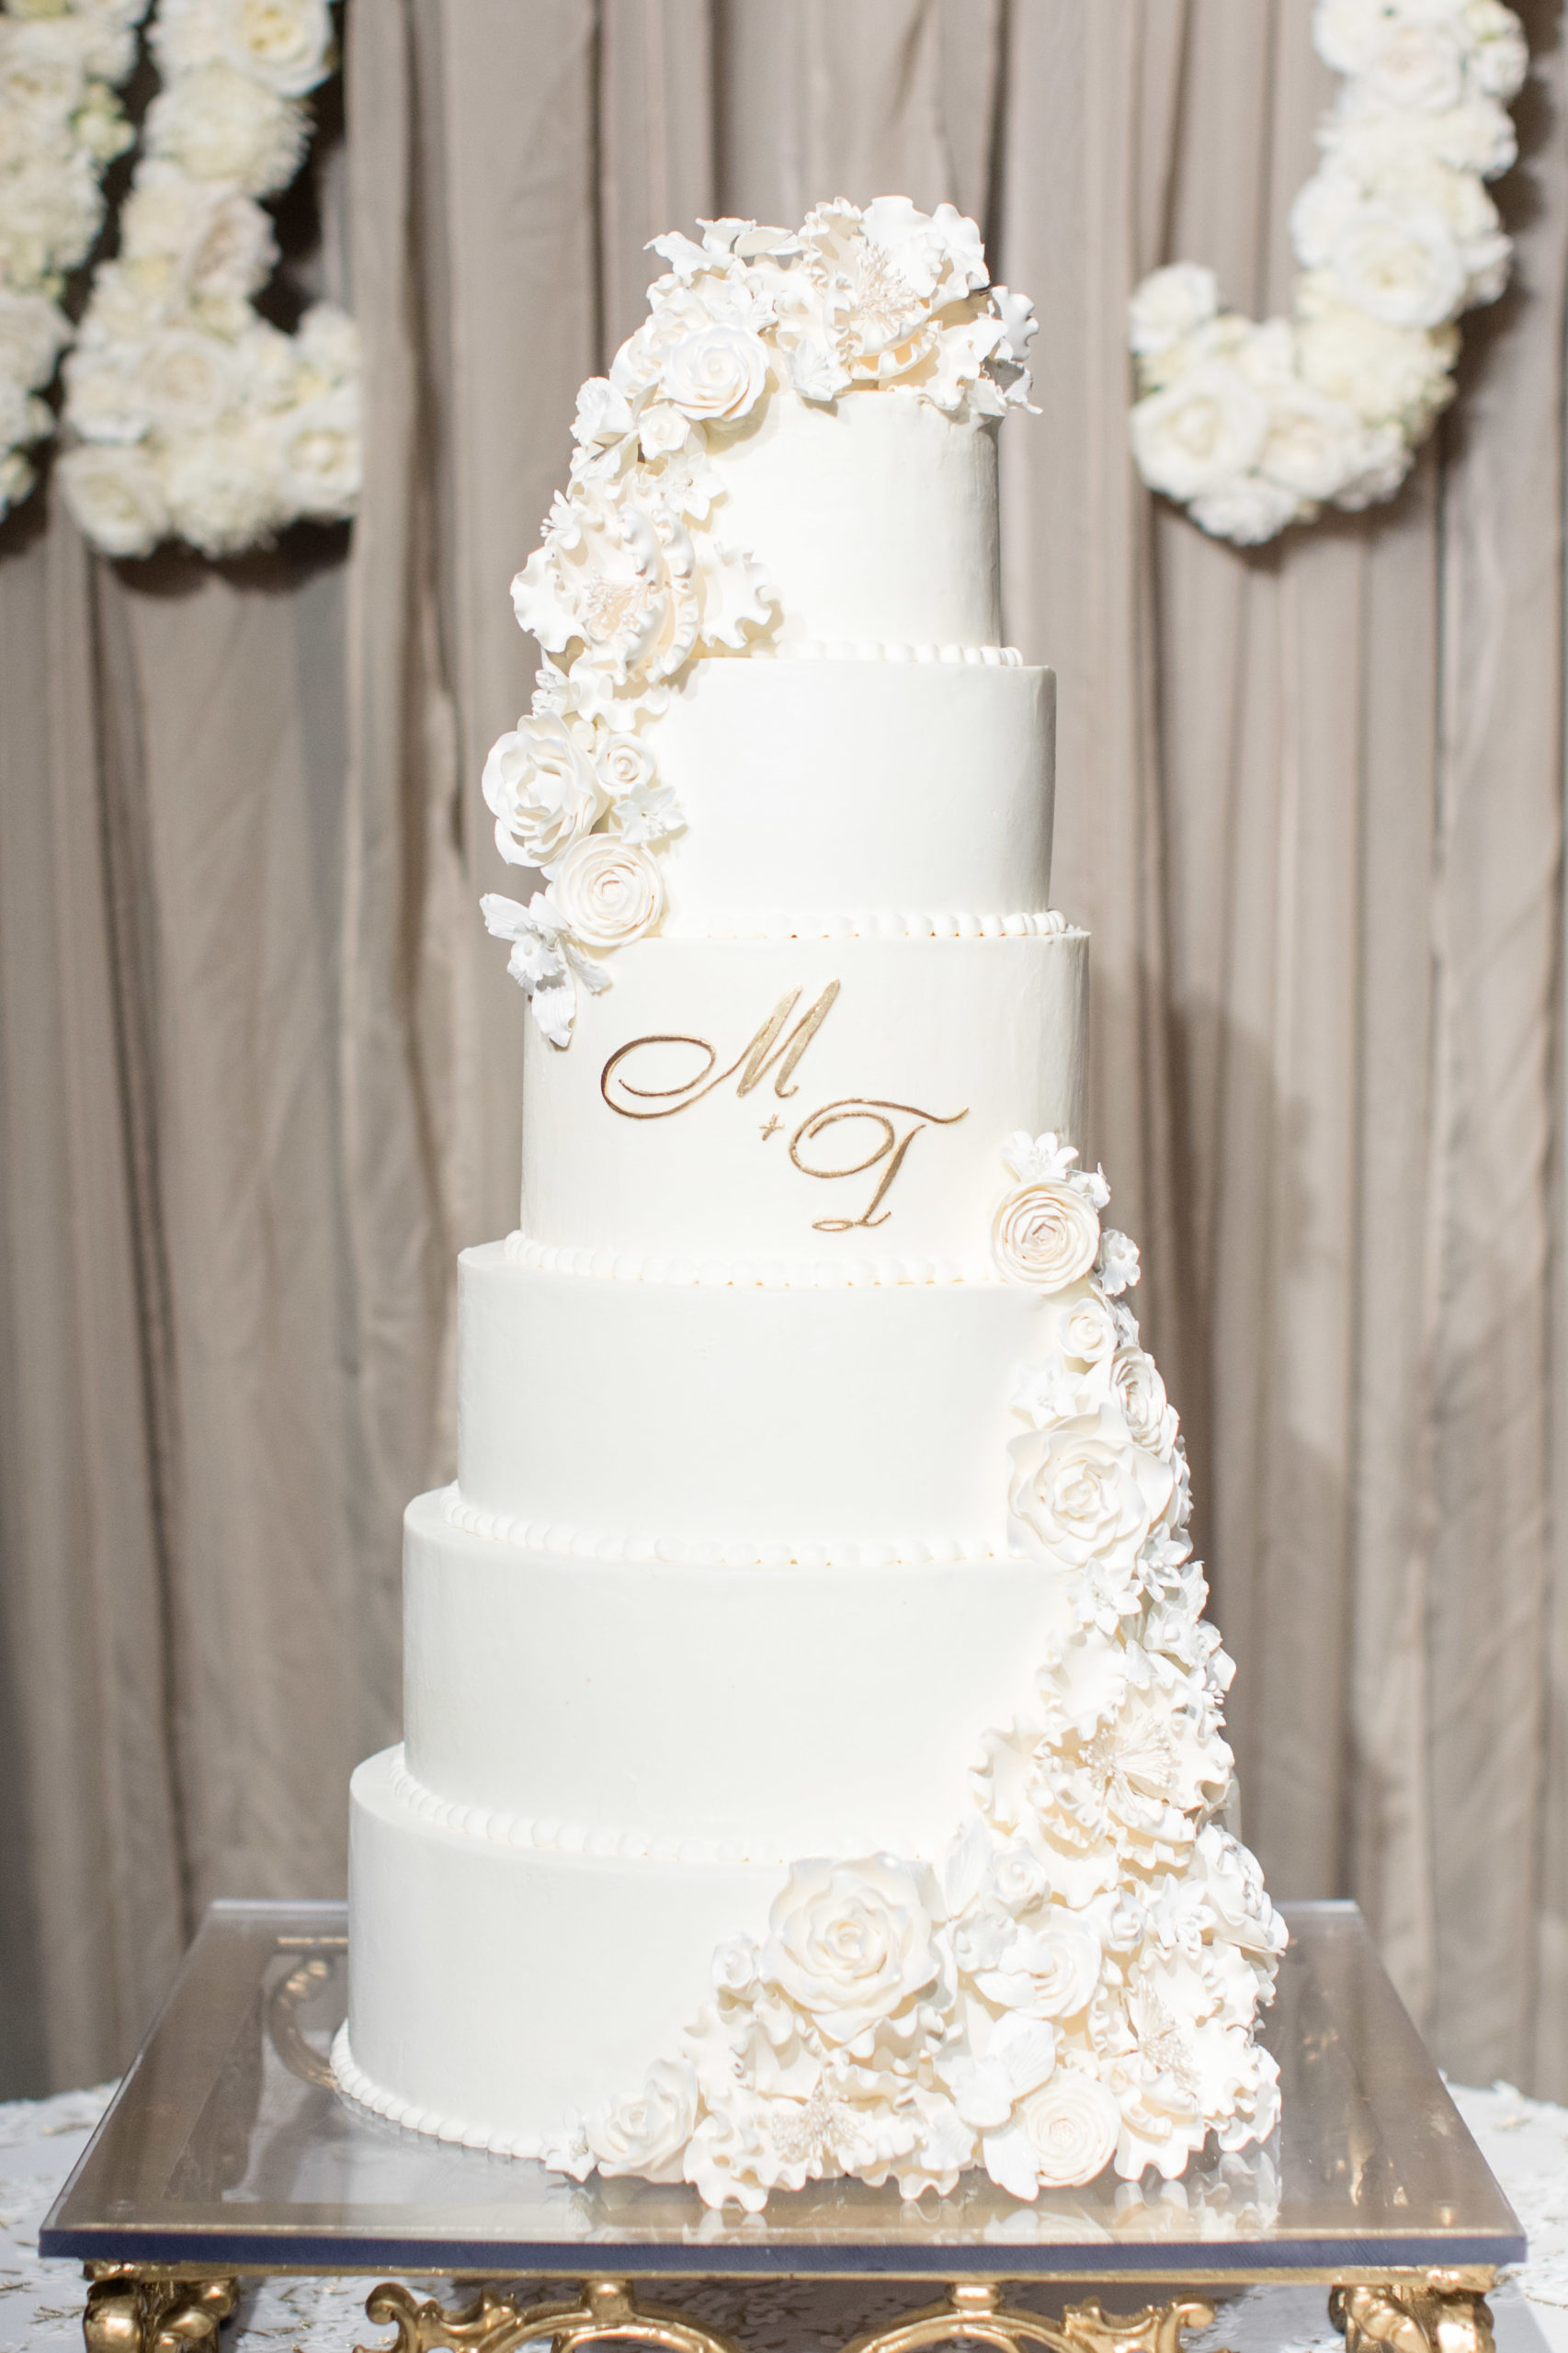 A white 6-teired wedding cake.